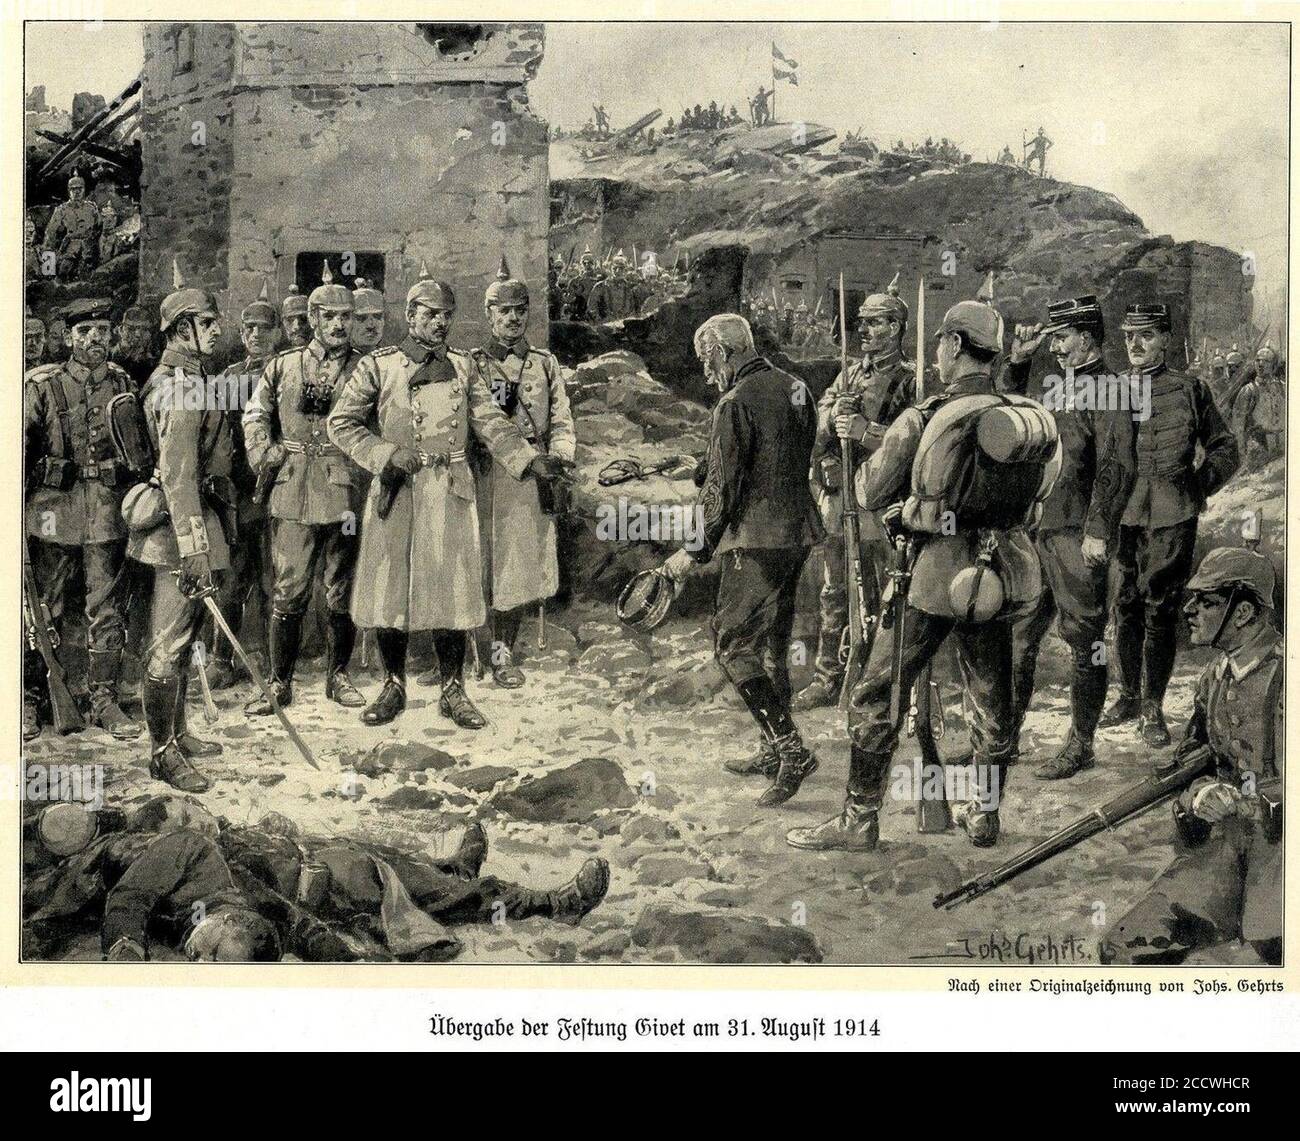 Johannes Gehrts - Übergabe der Festung Givet am 31. August 1914. Stock Photo